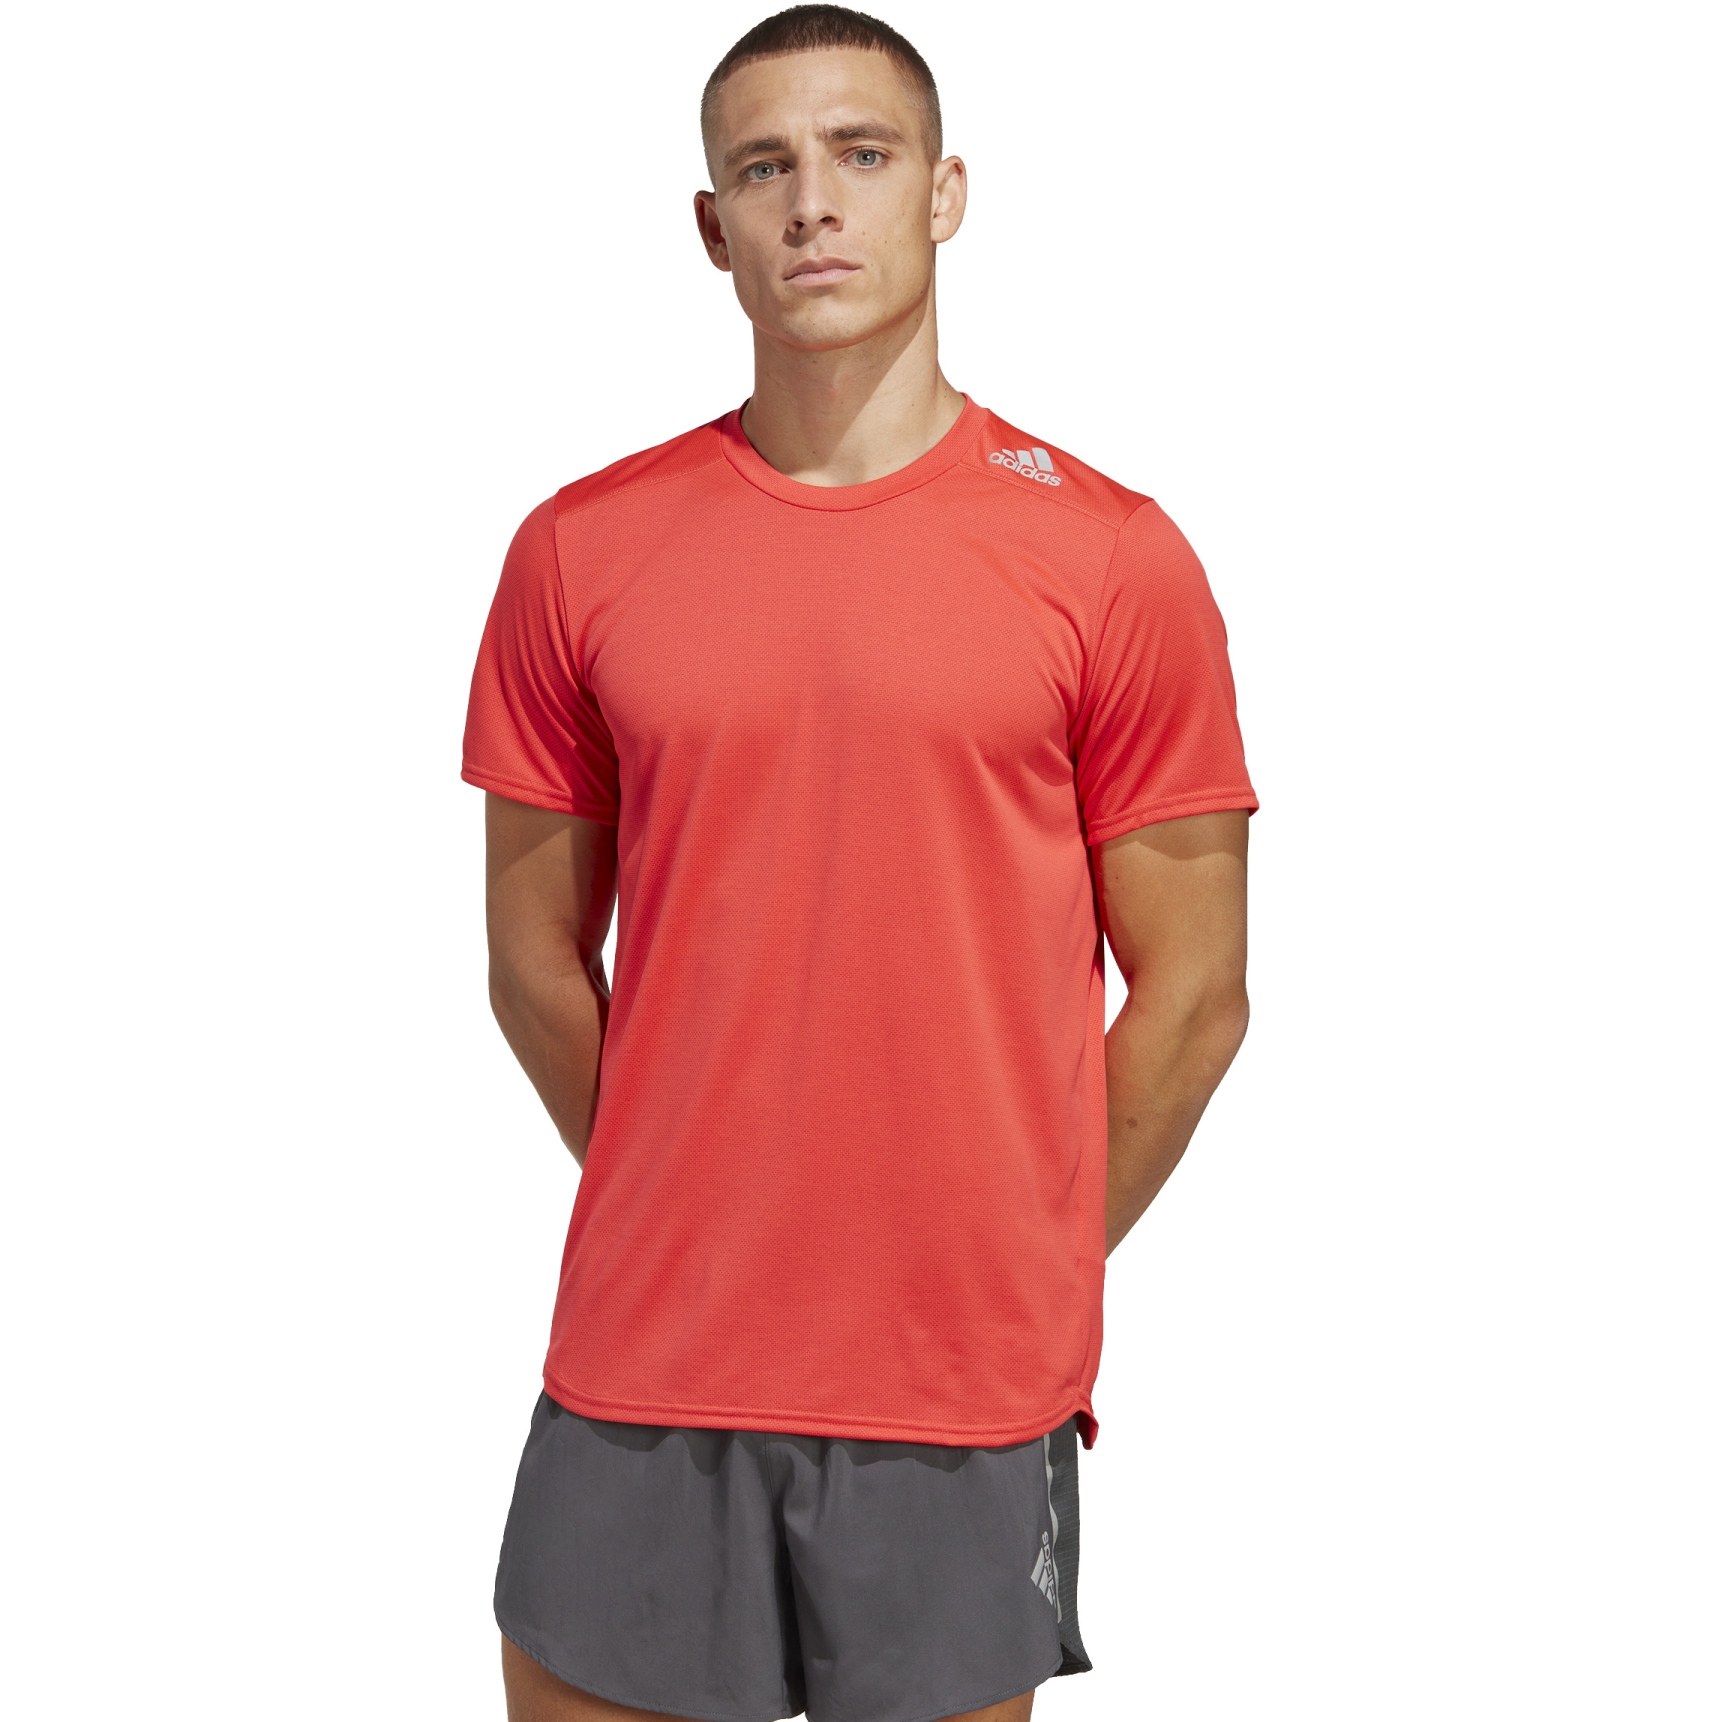 Immagine prodotto da adidas Maglietta Uomo - Designed 4 Running - bright red IB8940